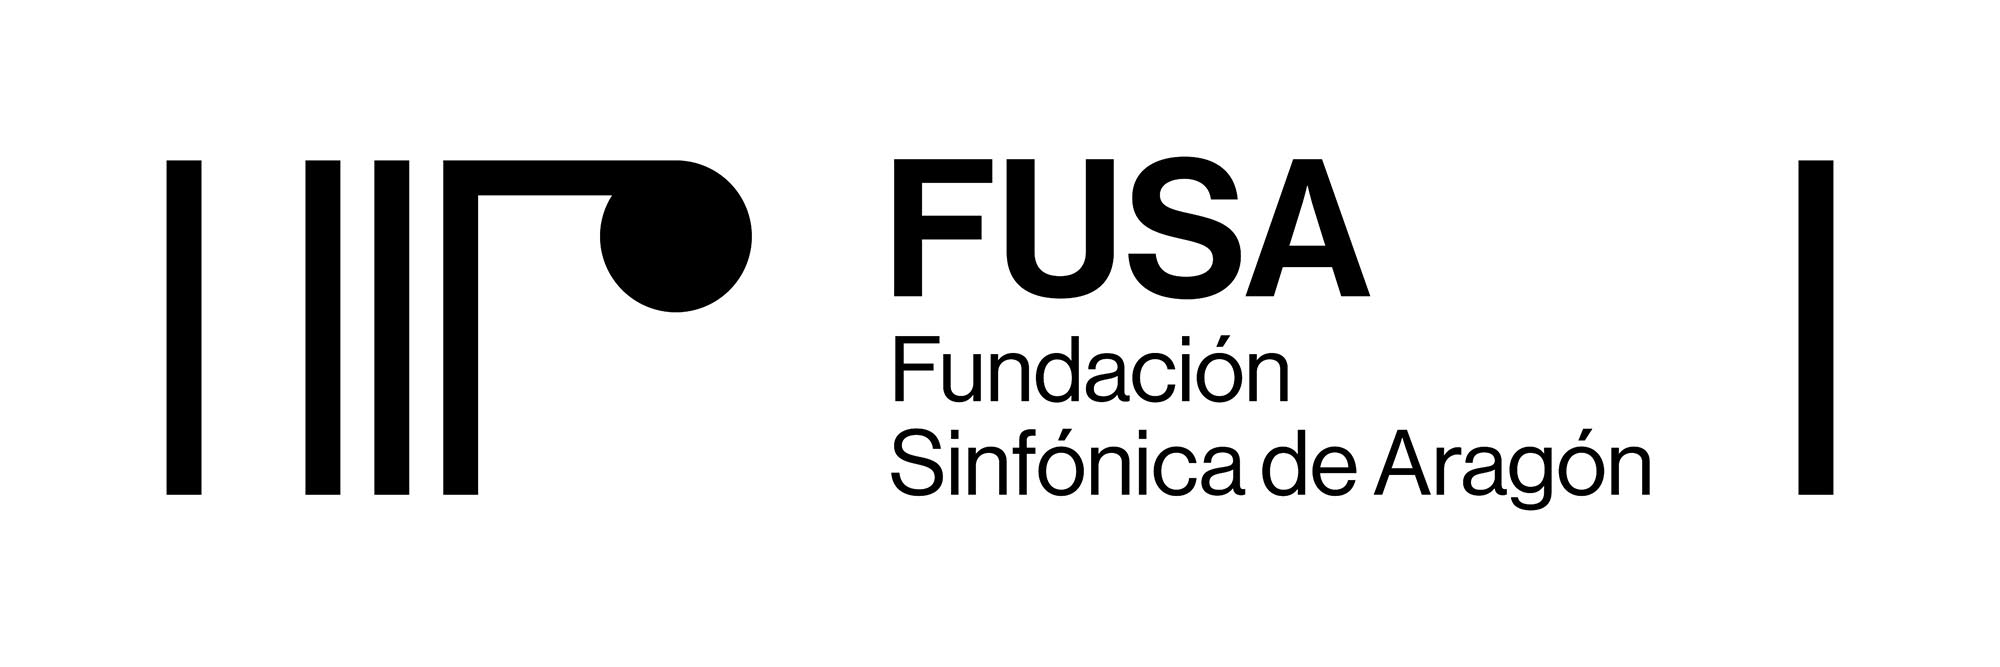 Fundación Sinfónica de Aragón (FUSA)